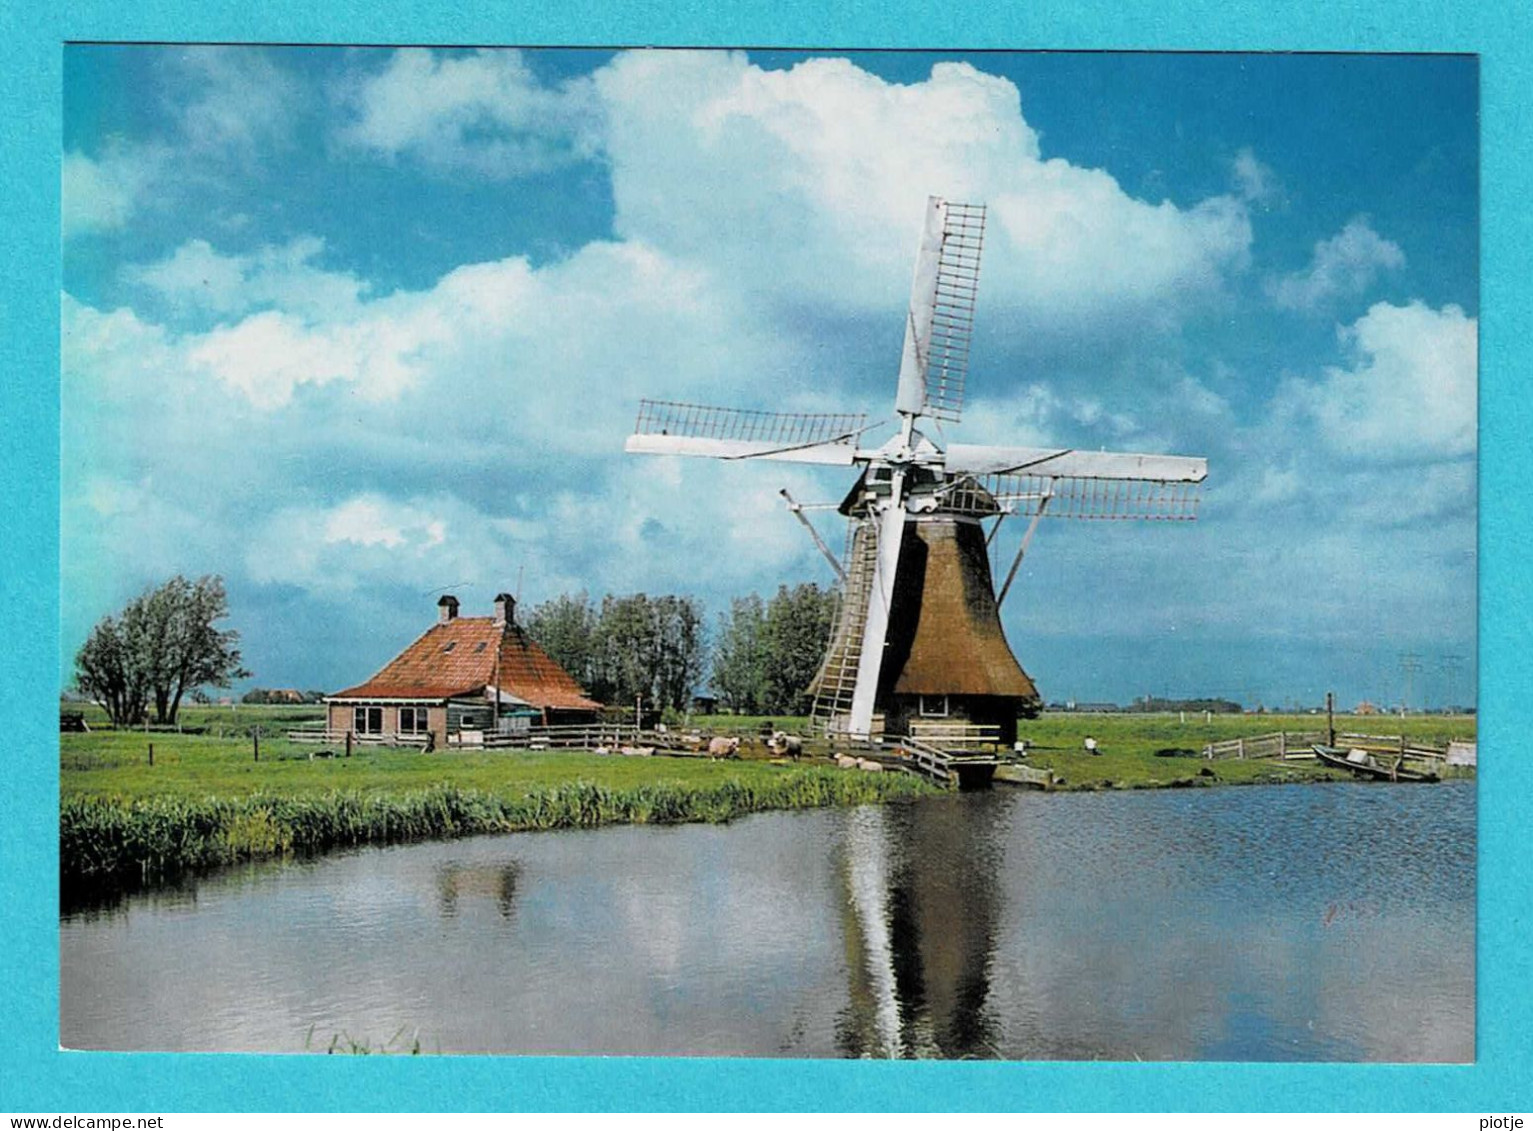 * Bolsward (Friesland - Nederland) * (JosPe) Poldermolen Lonjé, Moulin à Vent, Mill, Muhle, Old - Bolsward